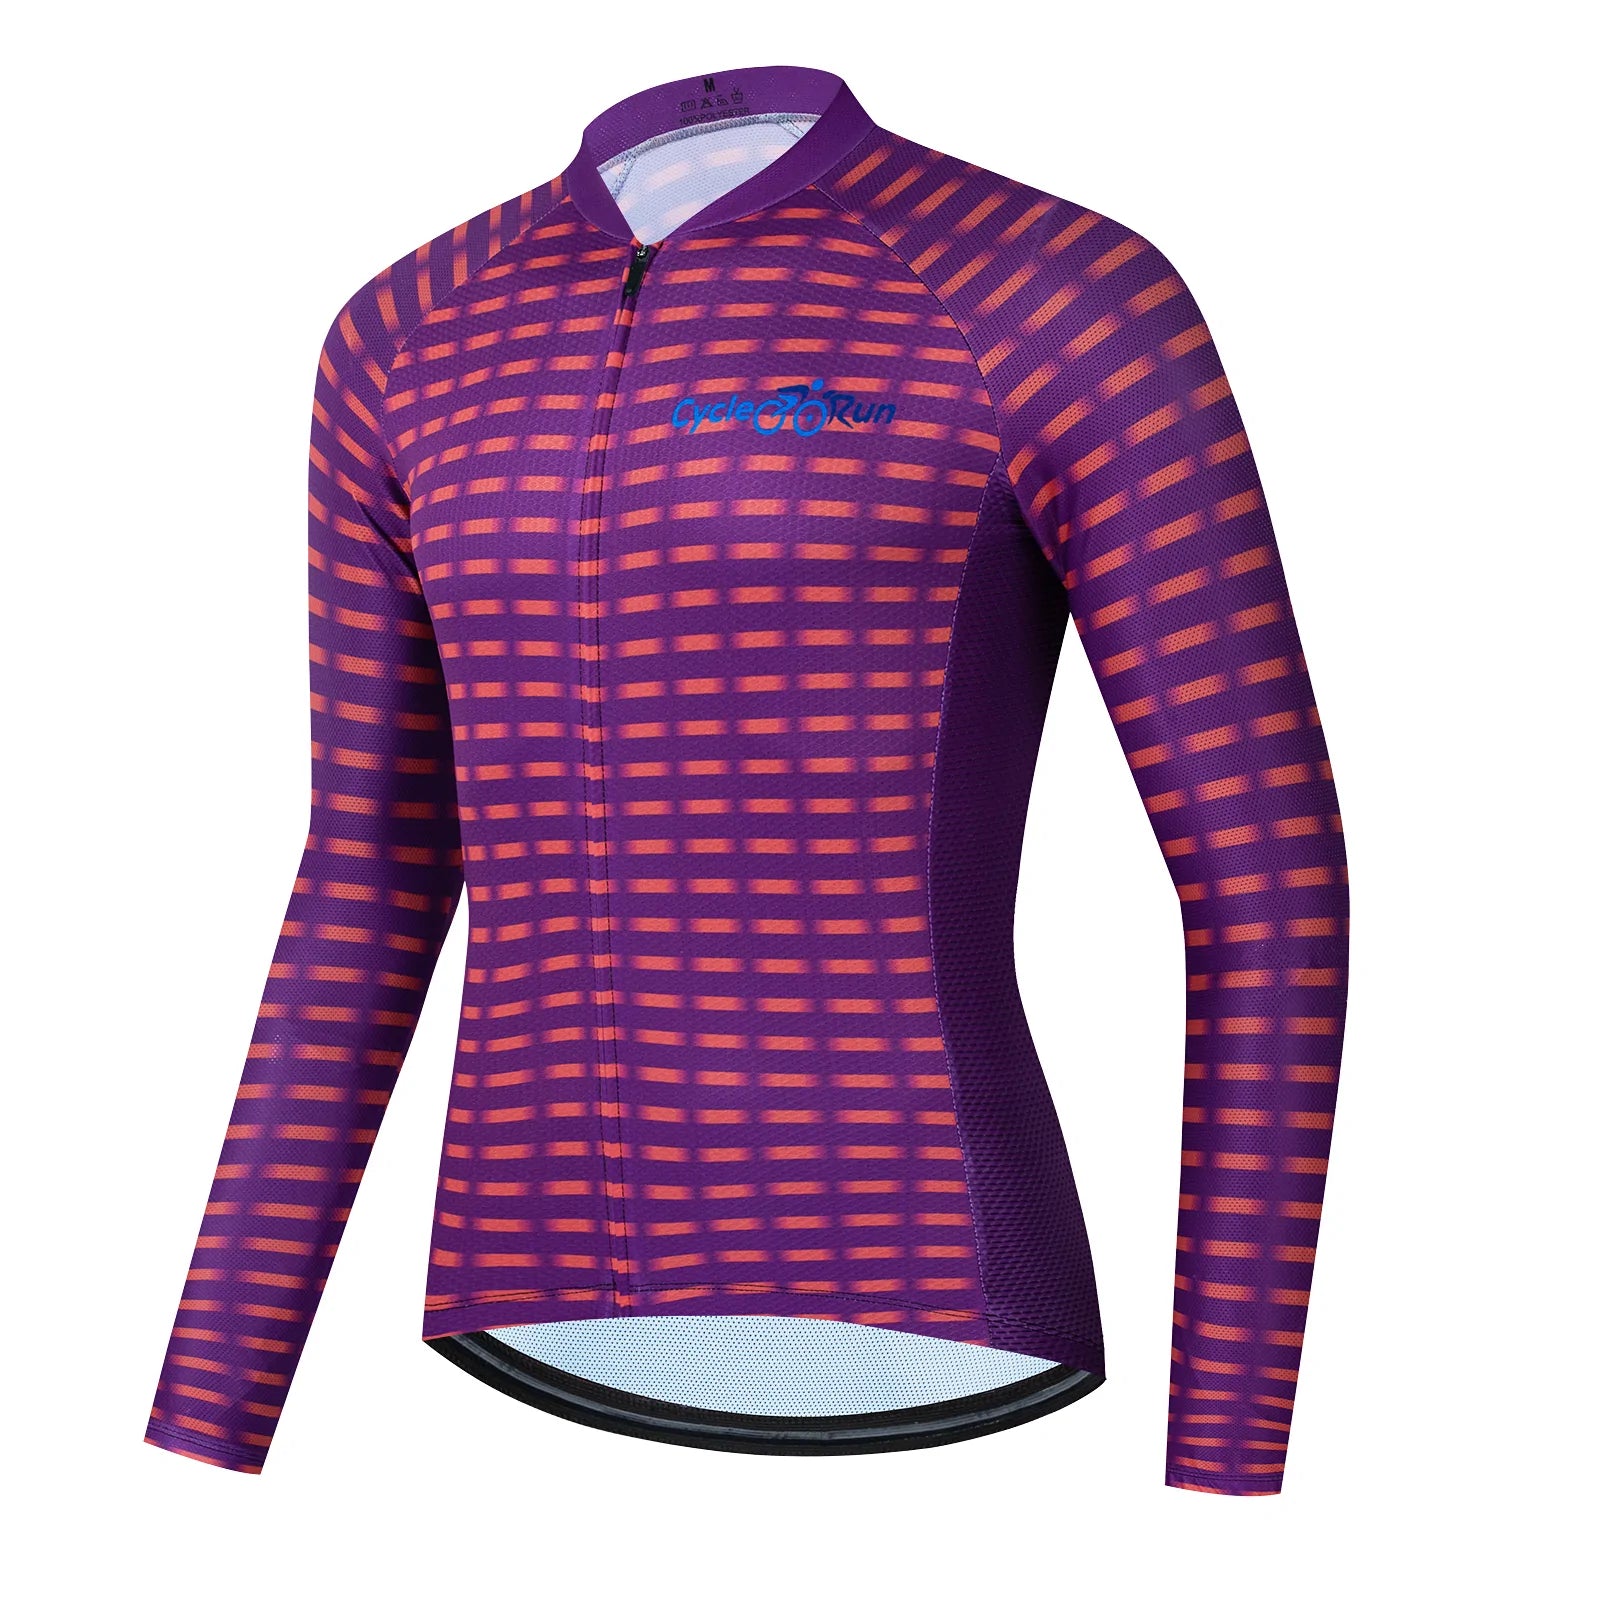 Trando Long Sleeve cycling jersey for women